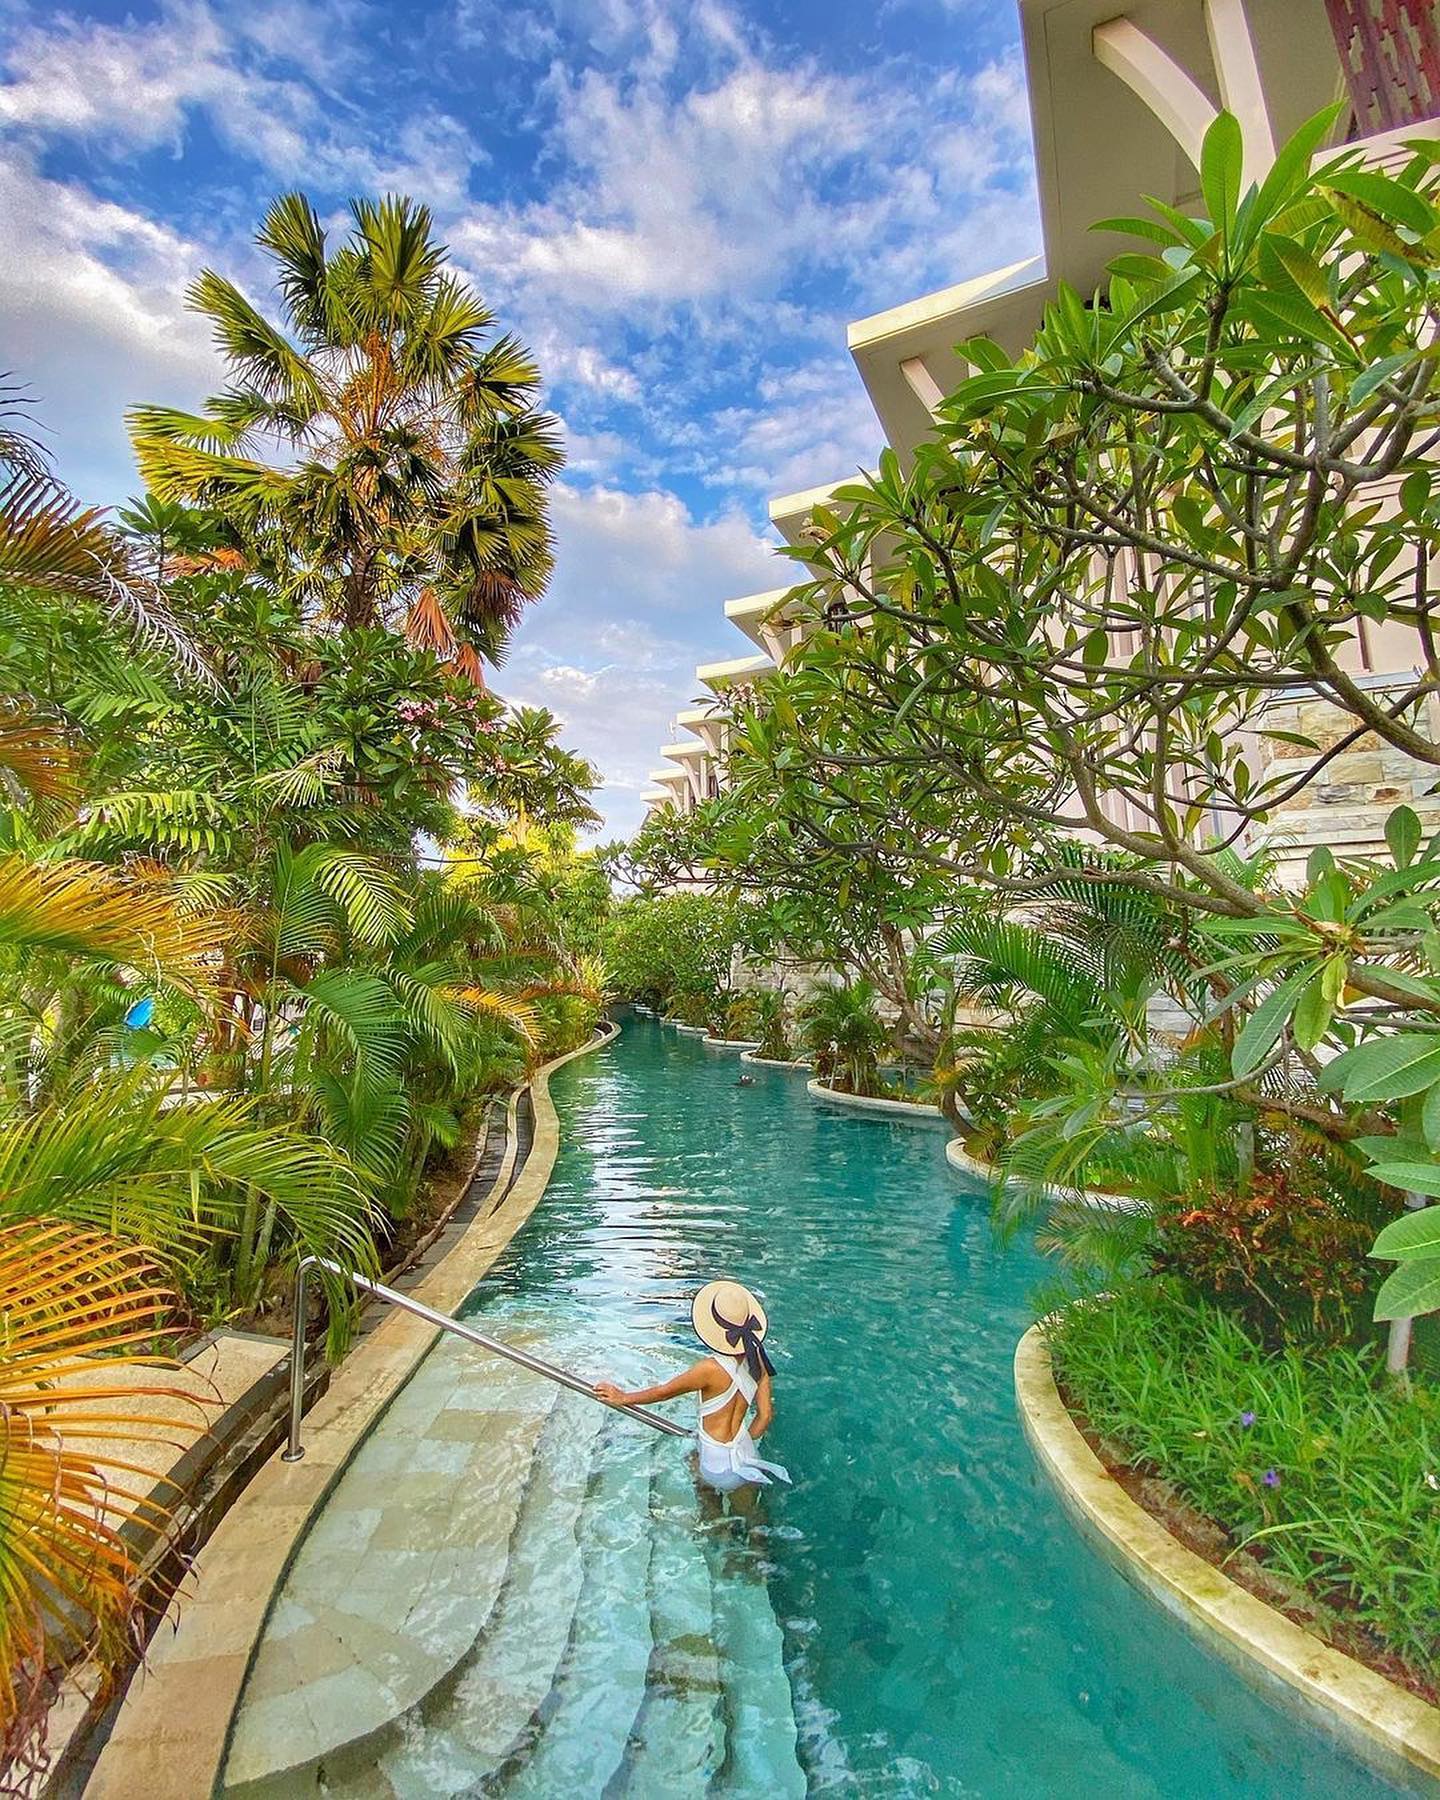 luxury hotels near Singapore - Sofitel Bali pool